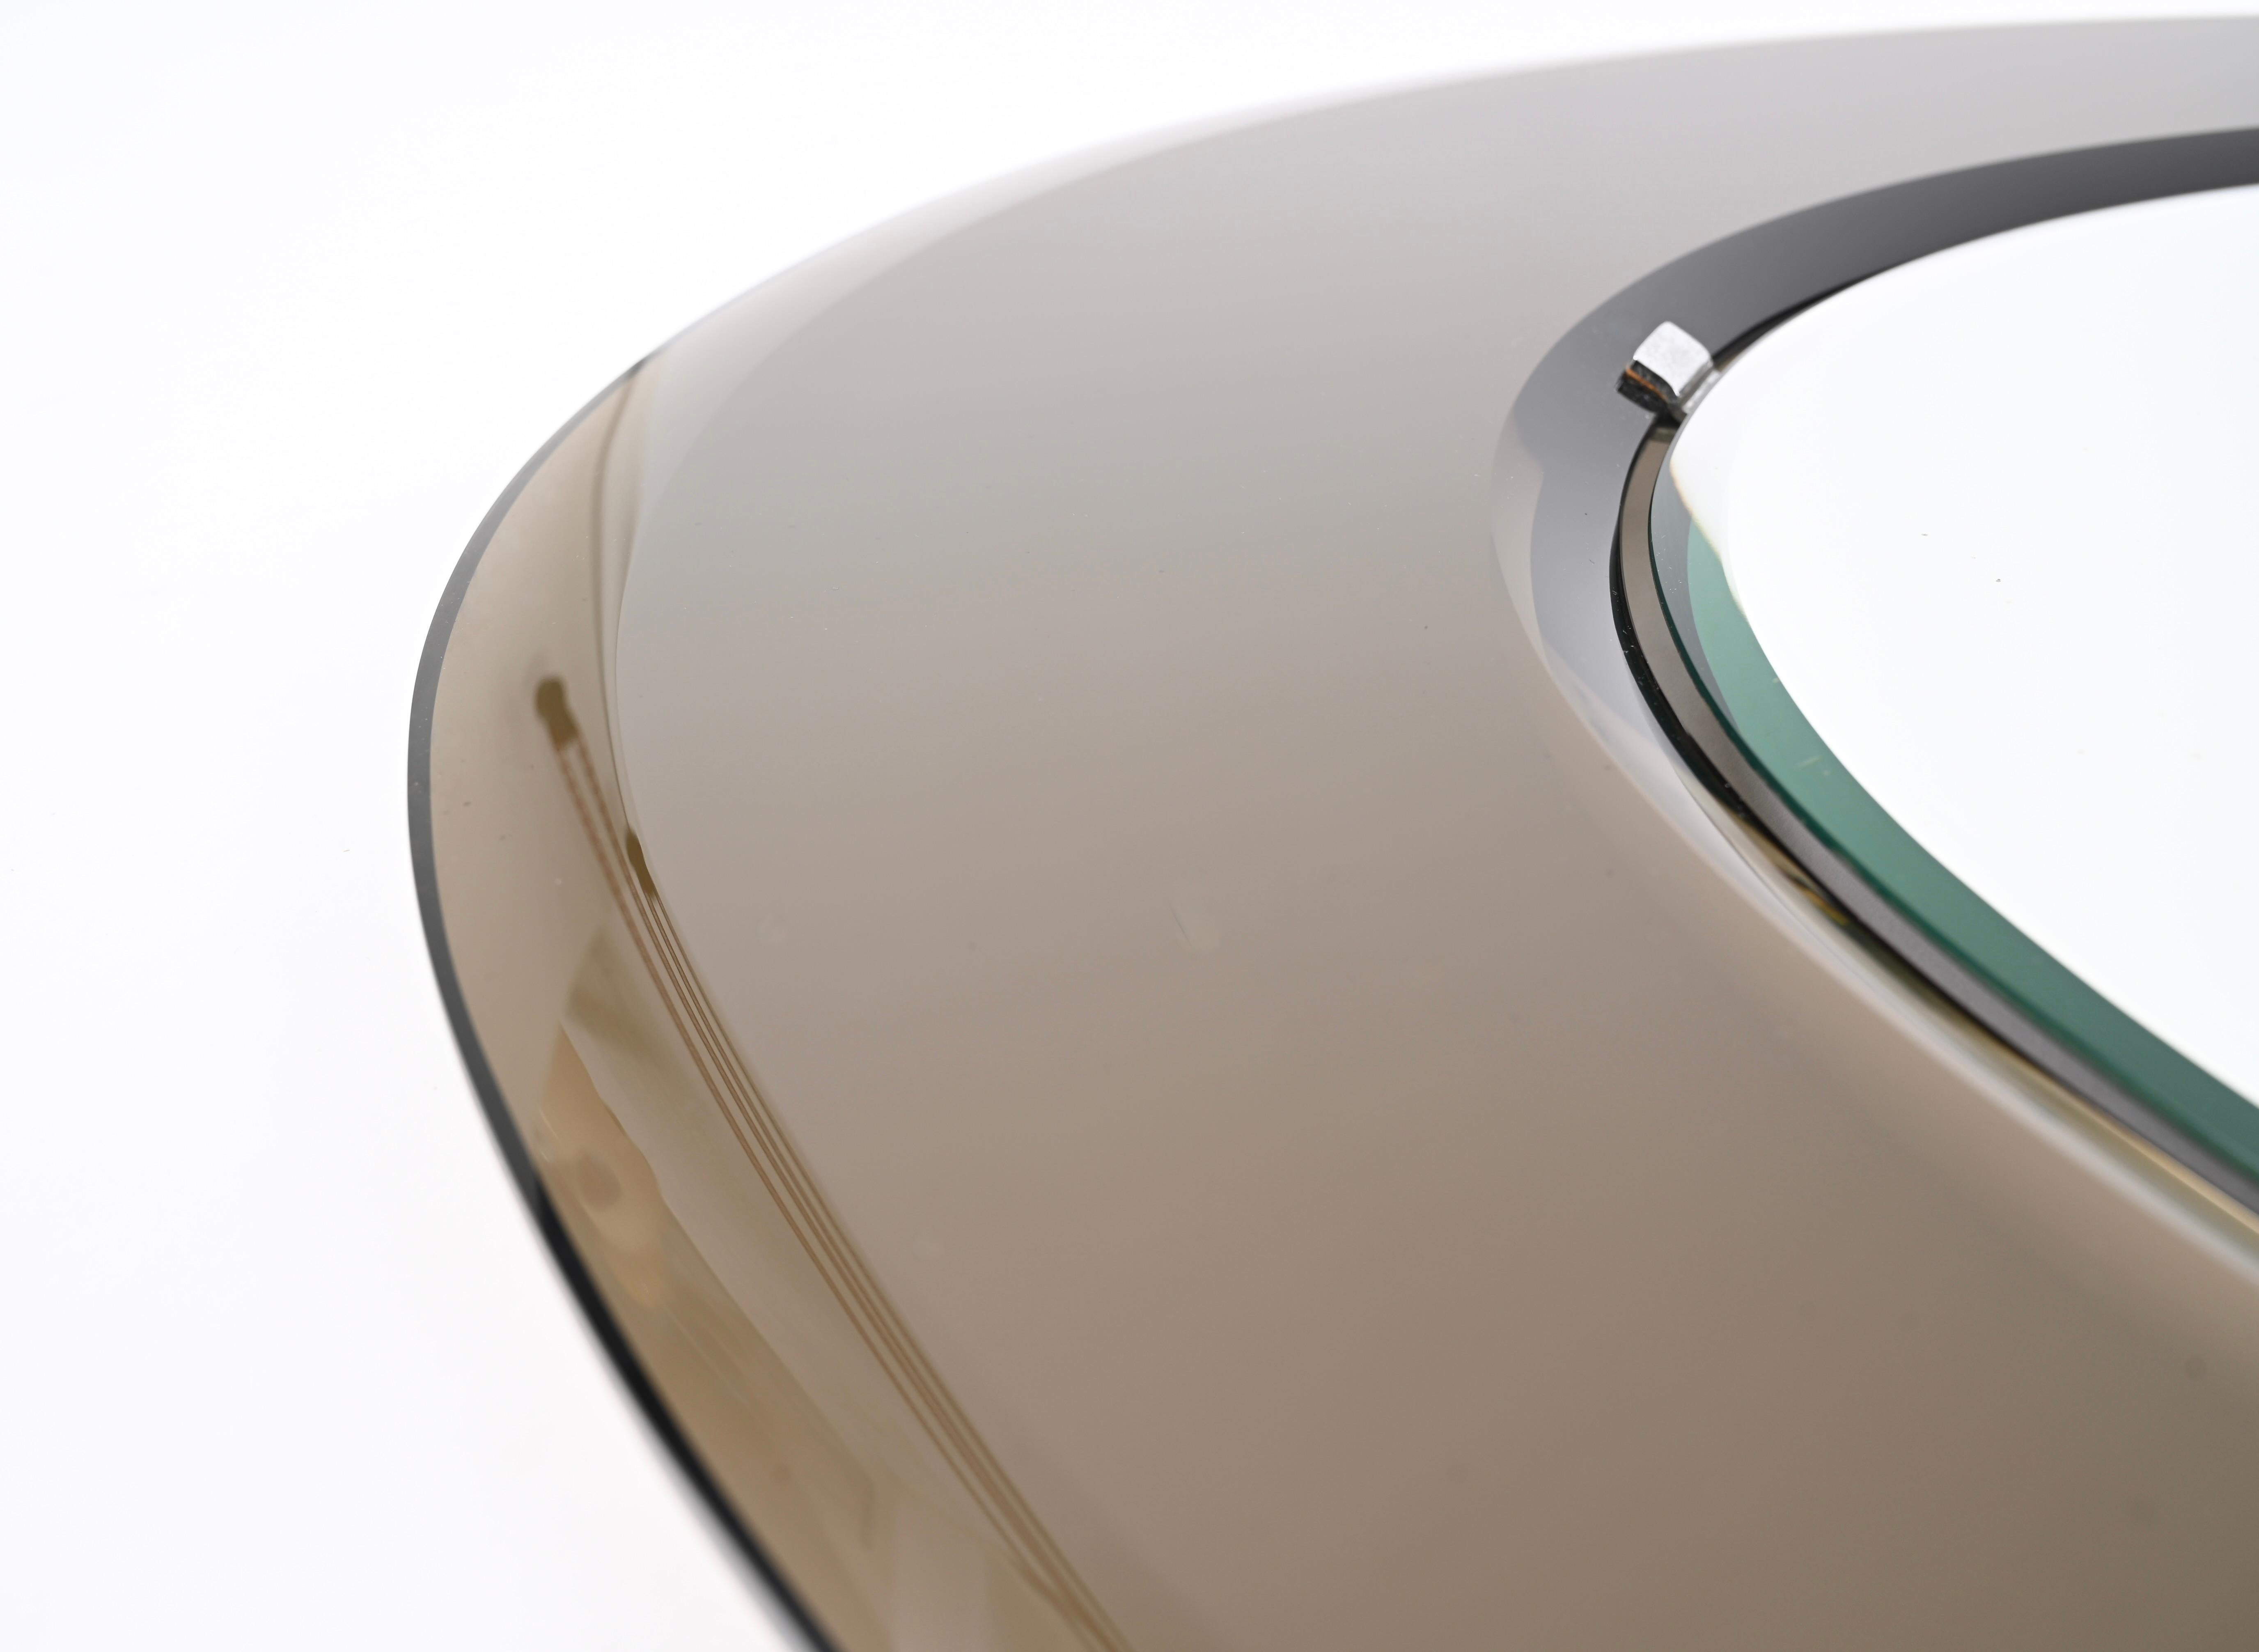 Prächtiger großer, dreifach abgeschrägter ovaler Spiegel aus der Jahrhundertmitte mit einem Spiegelrahmen aus bronziertem Glas. Dieser außergewöhnliche Spiegel wurde in den 1970er Jahren in Italien von Cristal Art hergestellt.  

Der Spiegel hat